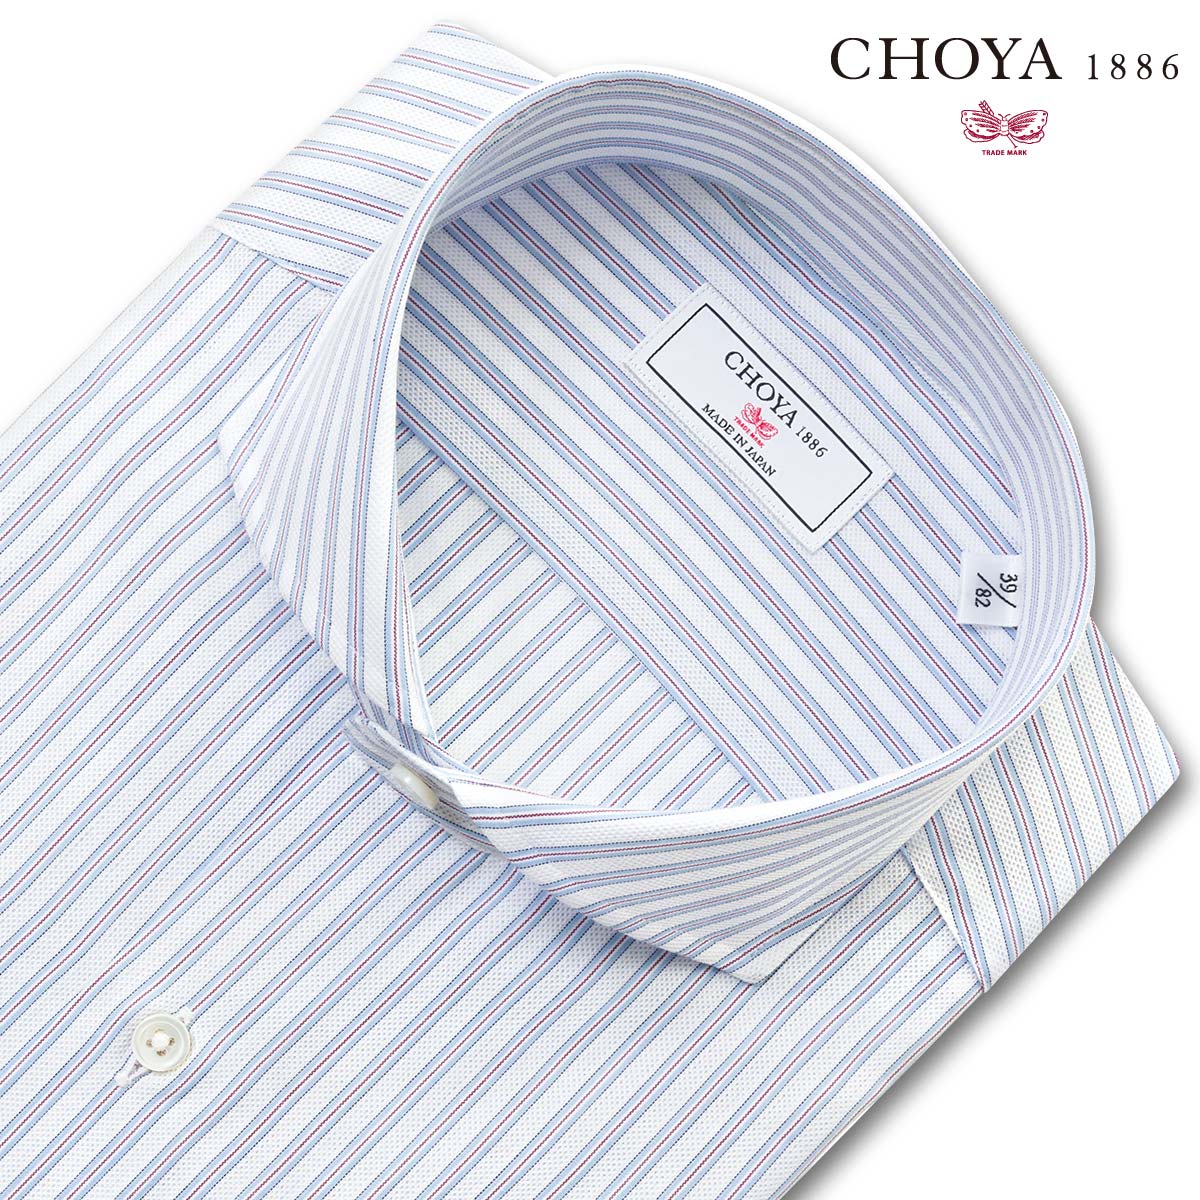 長袖 ワイシャツ メンズ カッターシャツ 綿100% 日本製Yシャツ CHOYA1886 ブルーストライプ カッタウェイ ドレスシャツ(cvd111-450) 2406SS